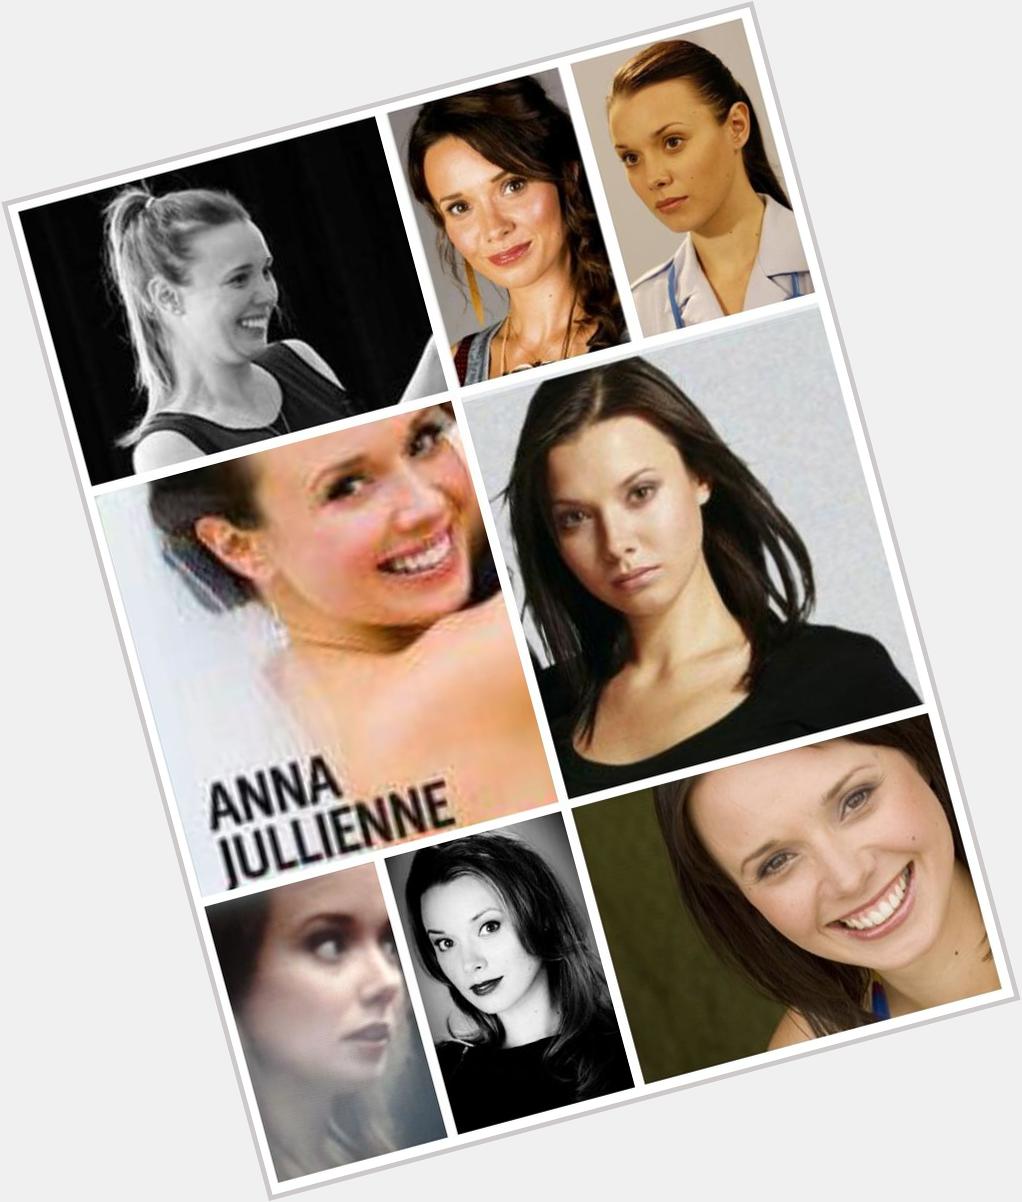  Happy Birthday
Anna Jullienne 